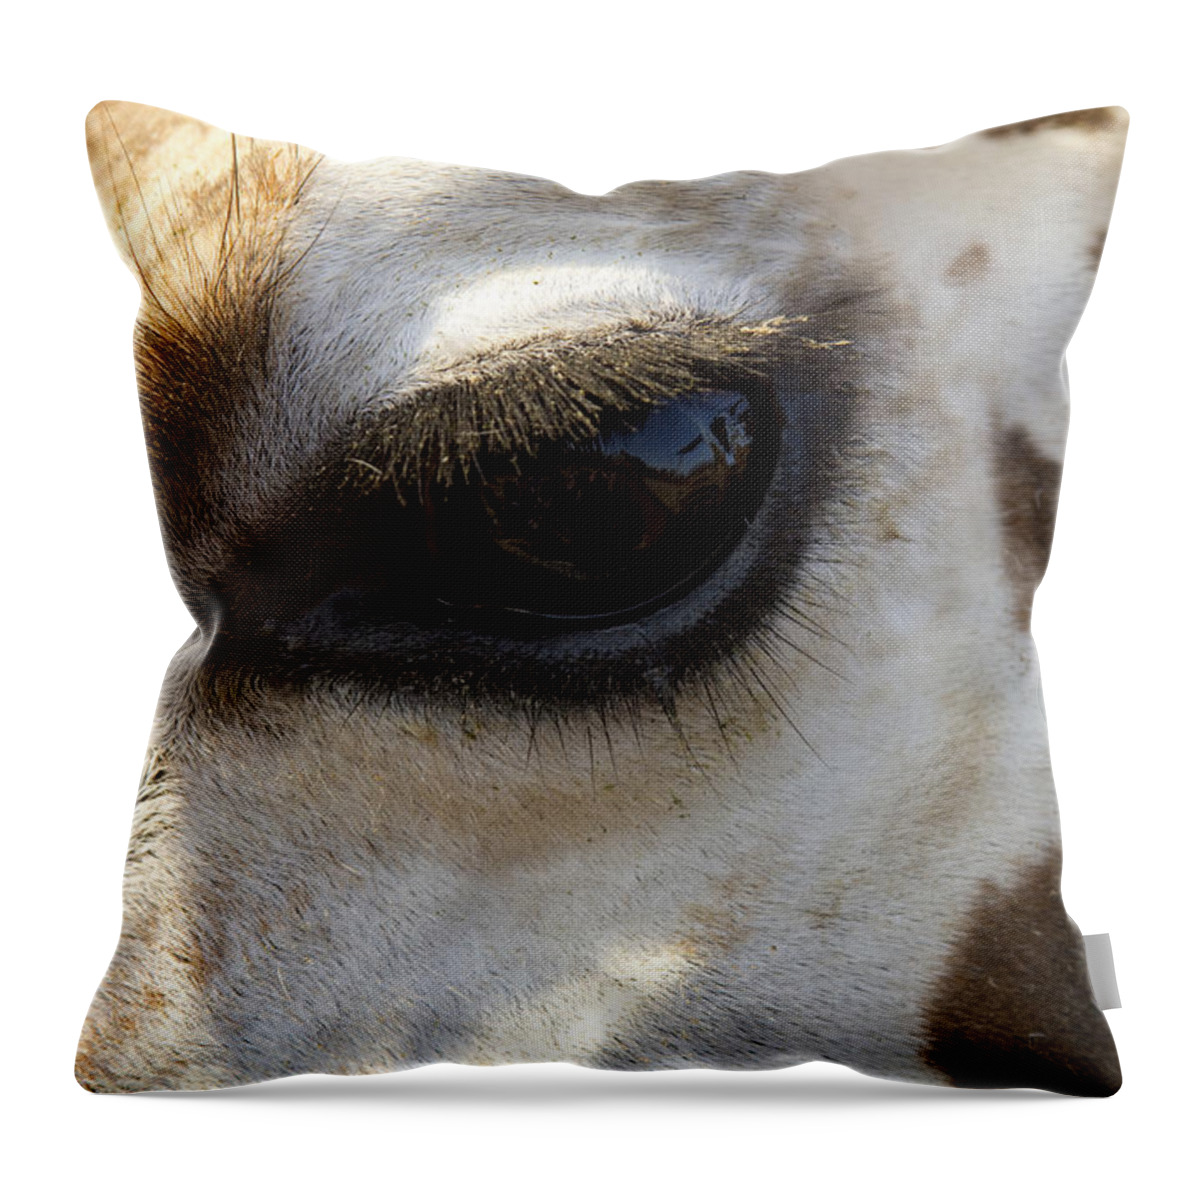 Giraffe Throw Pillow featuring the photograph Giraffe eye by Carrie Cranwill